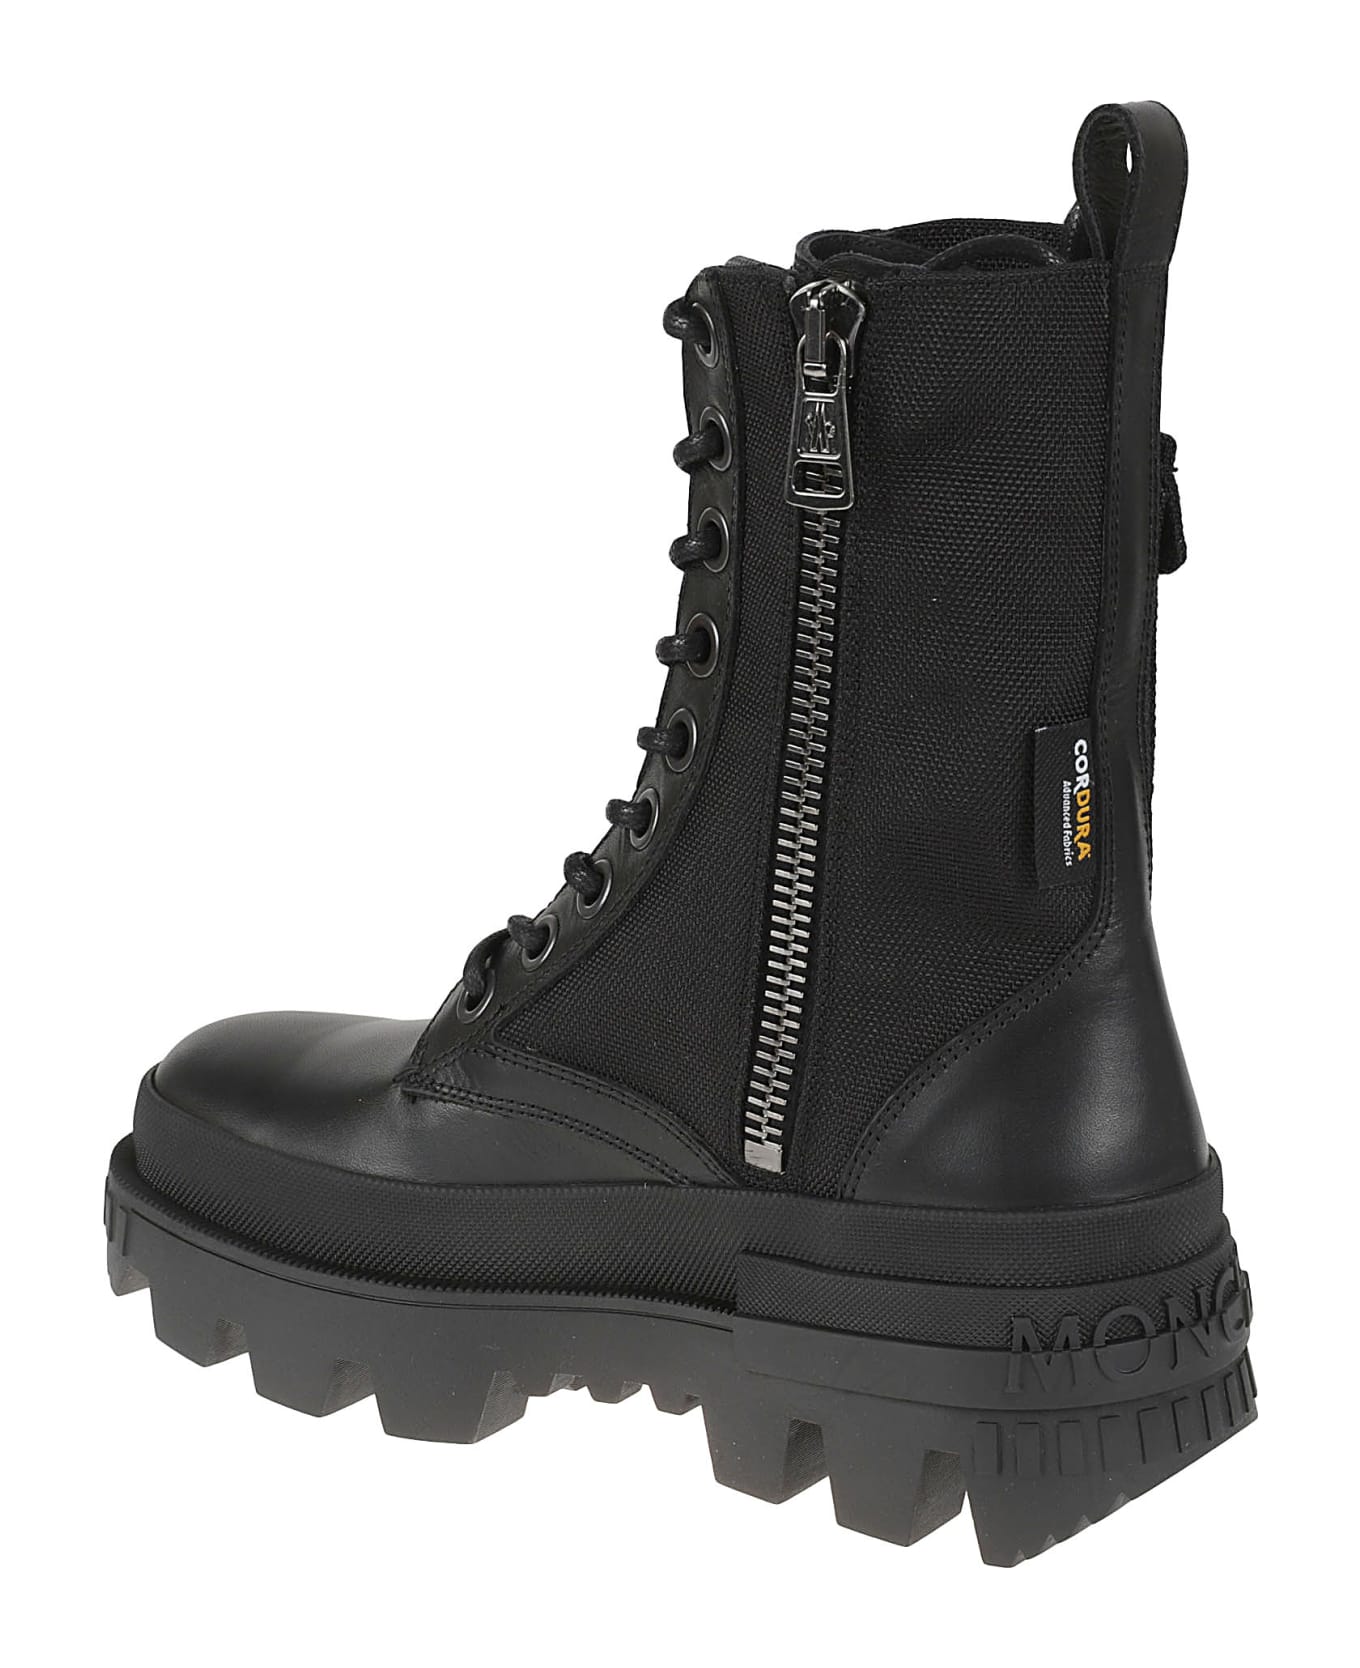 Moncler Konture Pocket Boots - Black